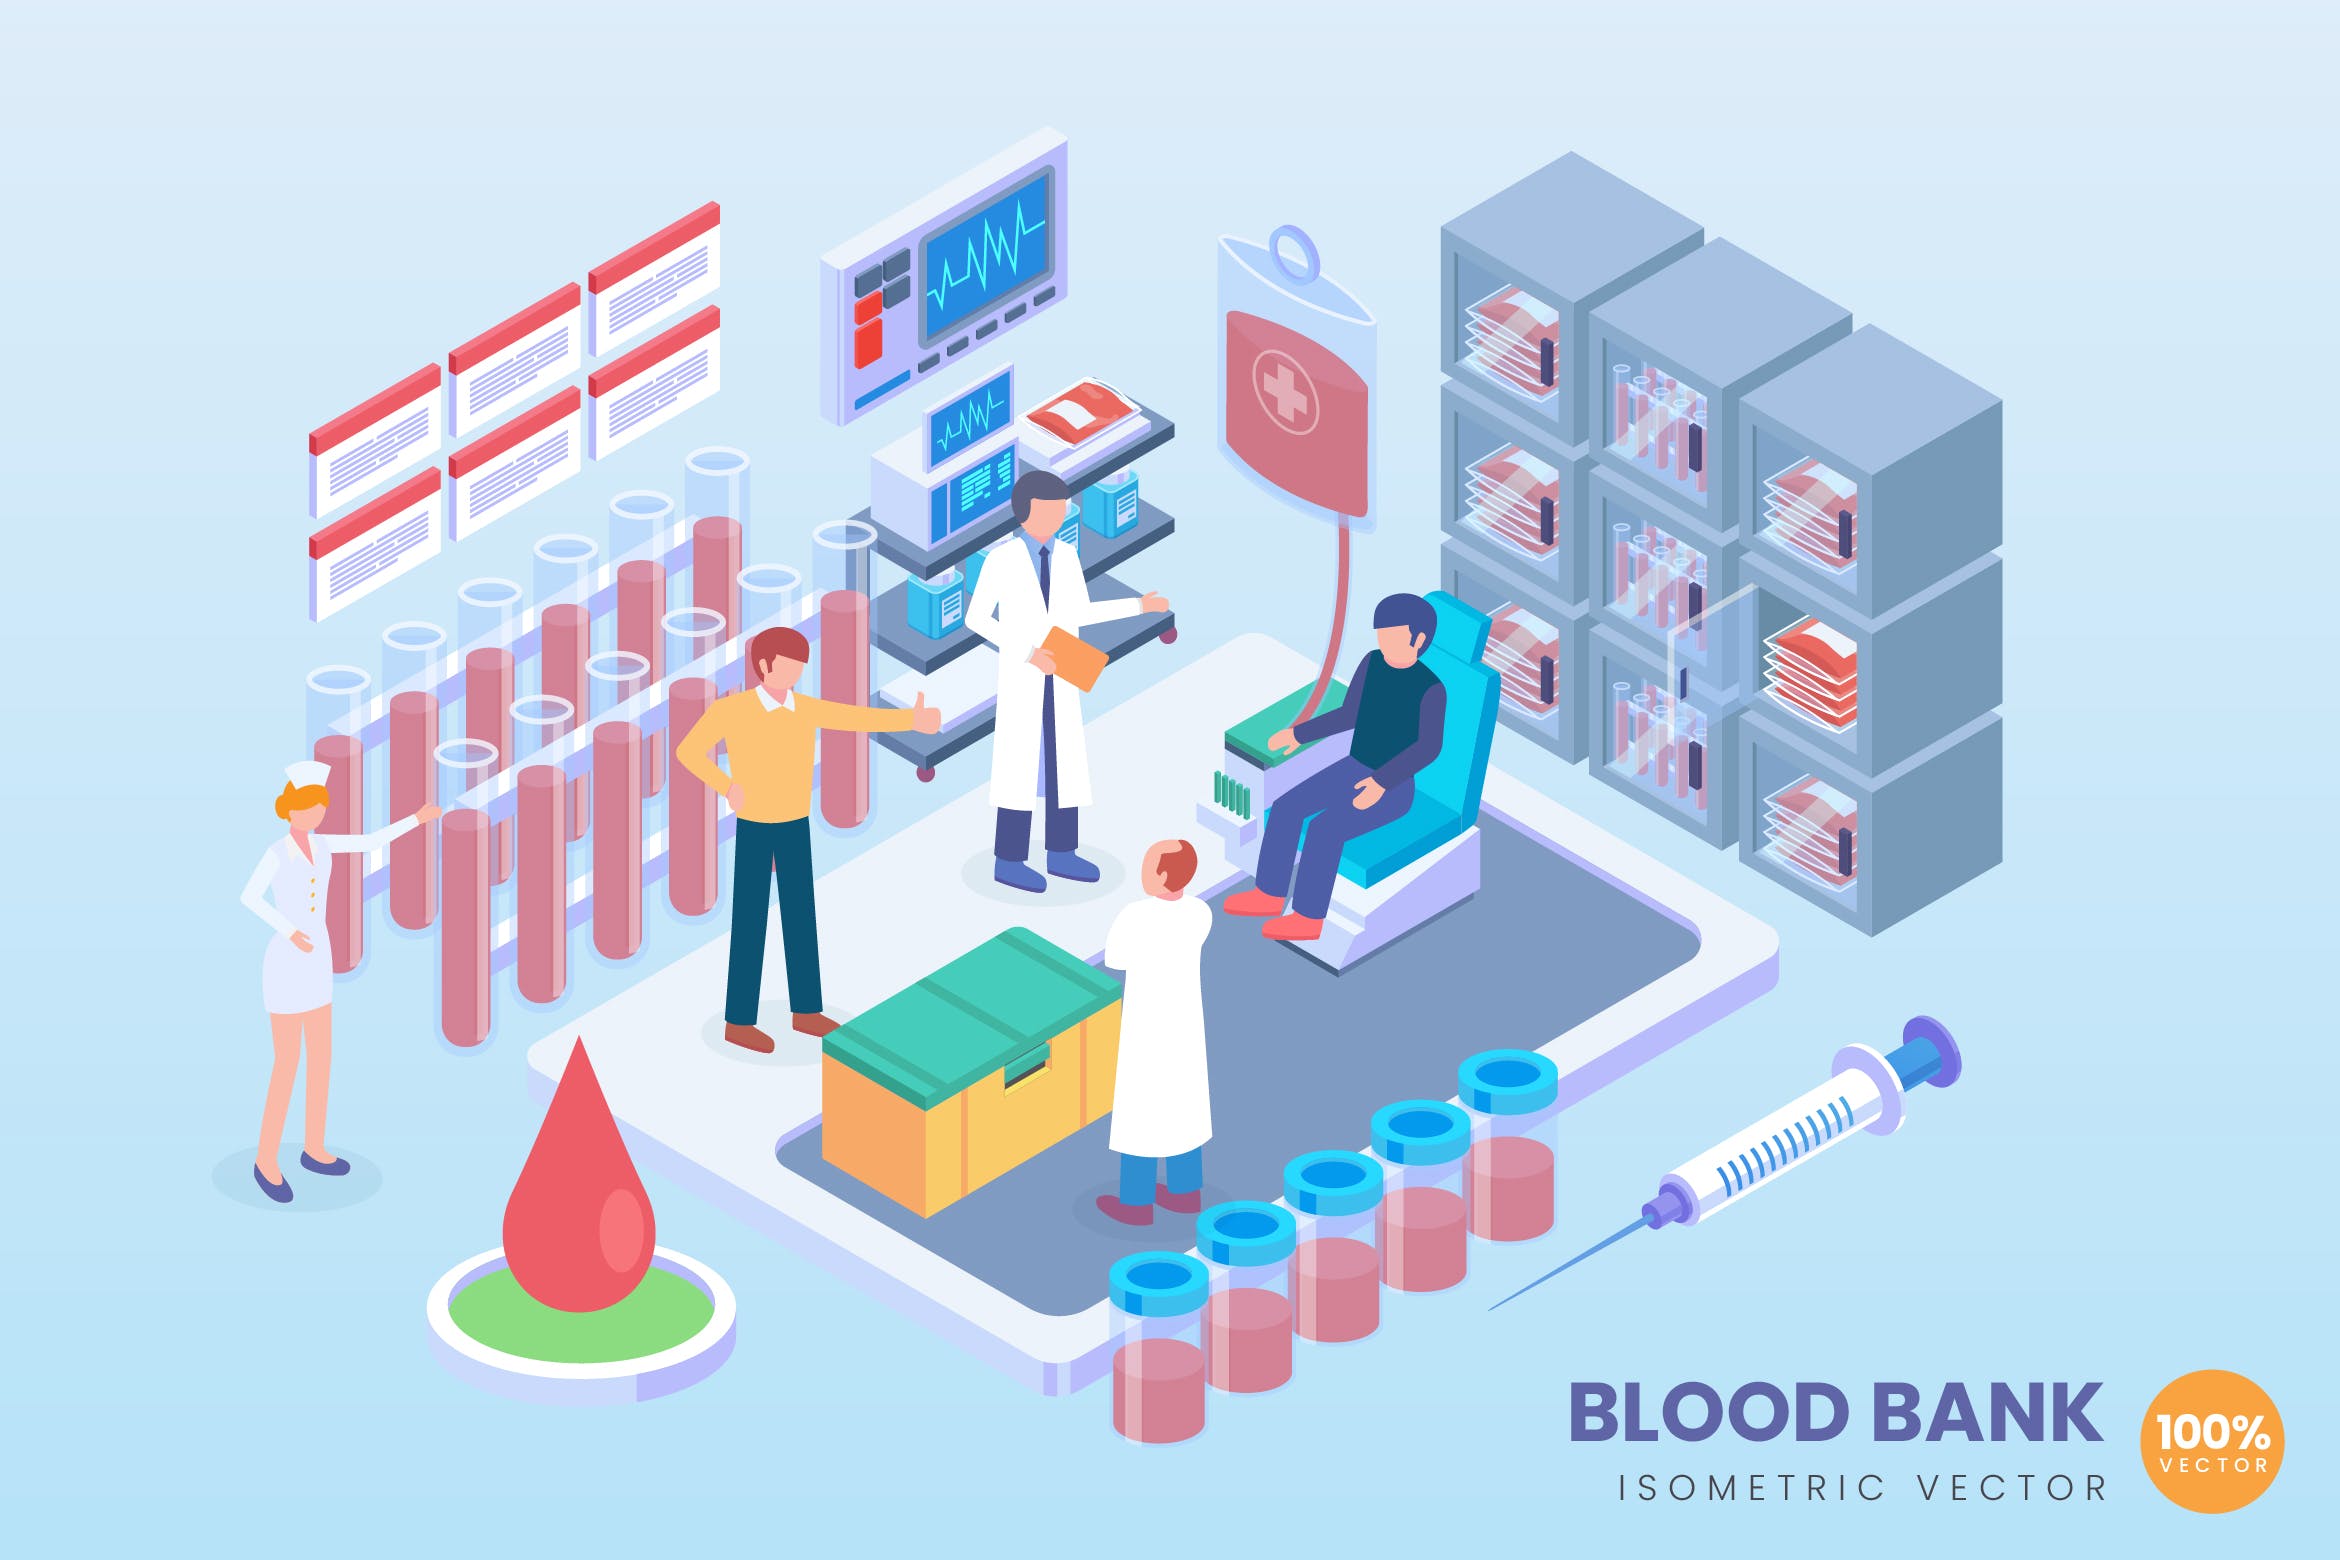 现代血库存储技术主题等距矢量第一素材精选科技概念插画 Isometric Blood Bank Vector Concept插图